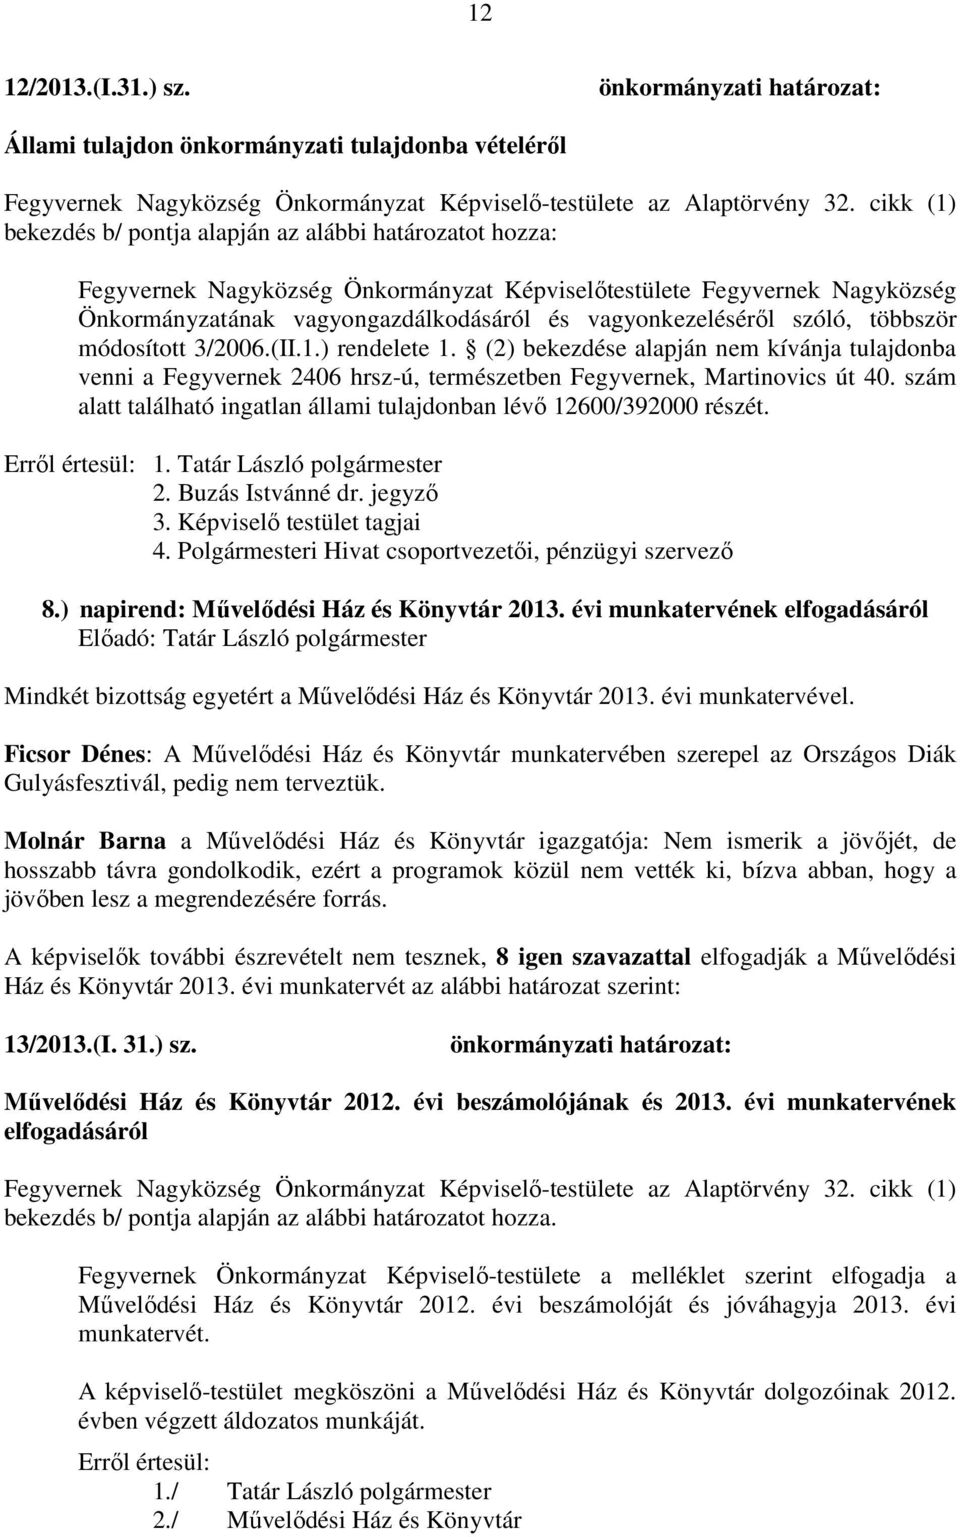 vagyonkezeléséről szóló, többször módosított 3/2006.(II.1.) rendelete 1. (2) bekezdése alapján nem kívánja tulajdonba venni a Fegyvernek 2406 hrsz-ú, természetben Fegyvernek, Martinovics út 40.